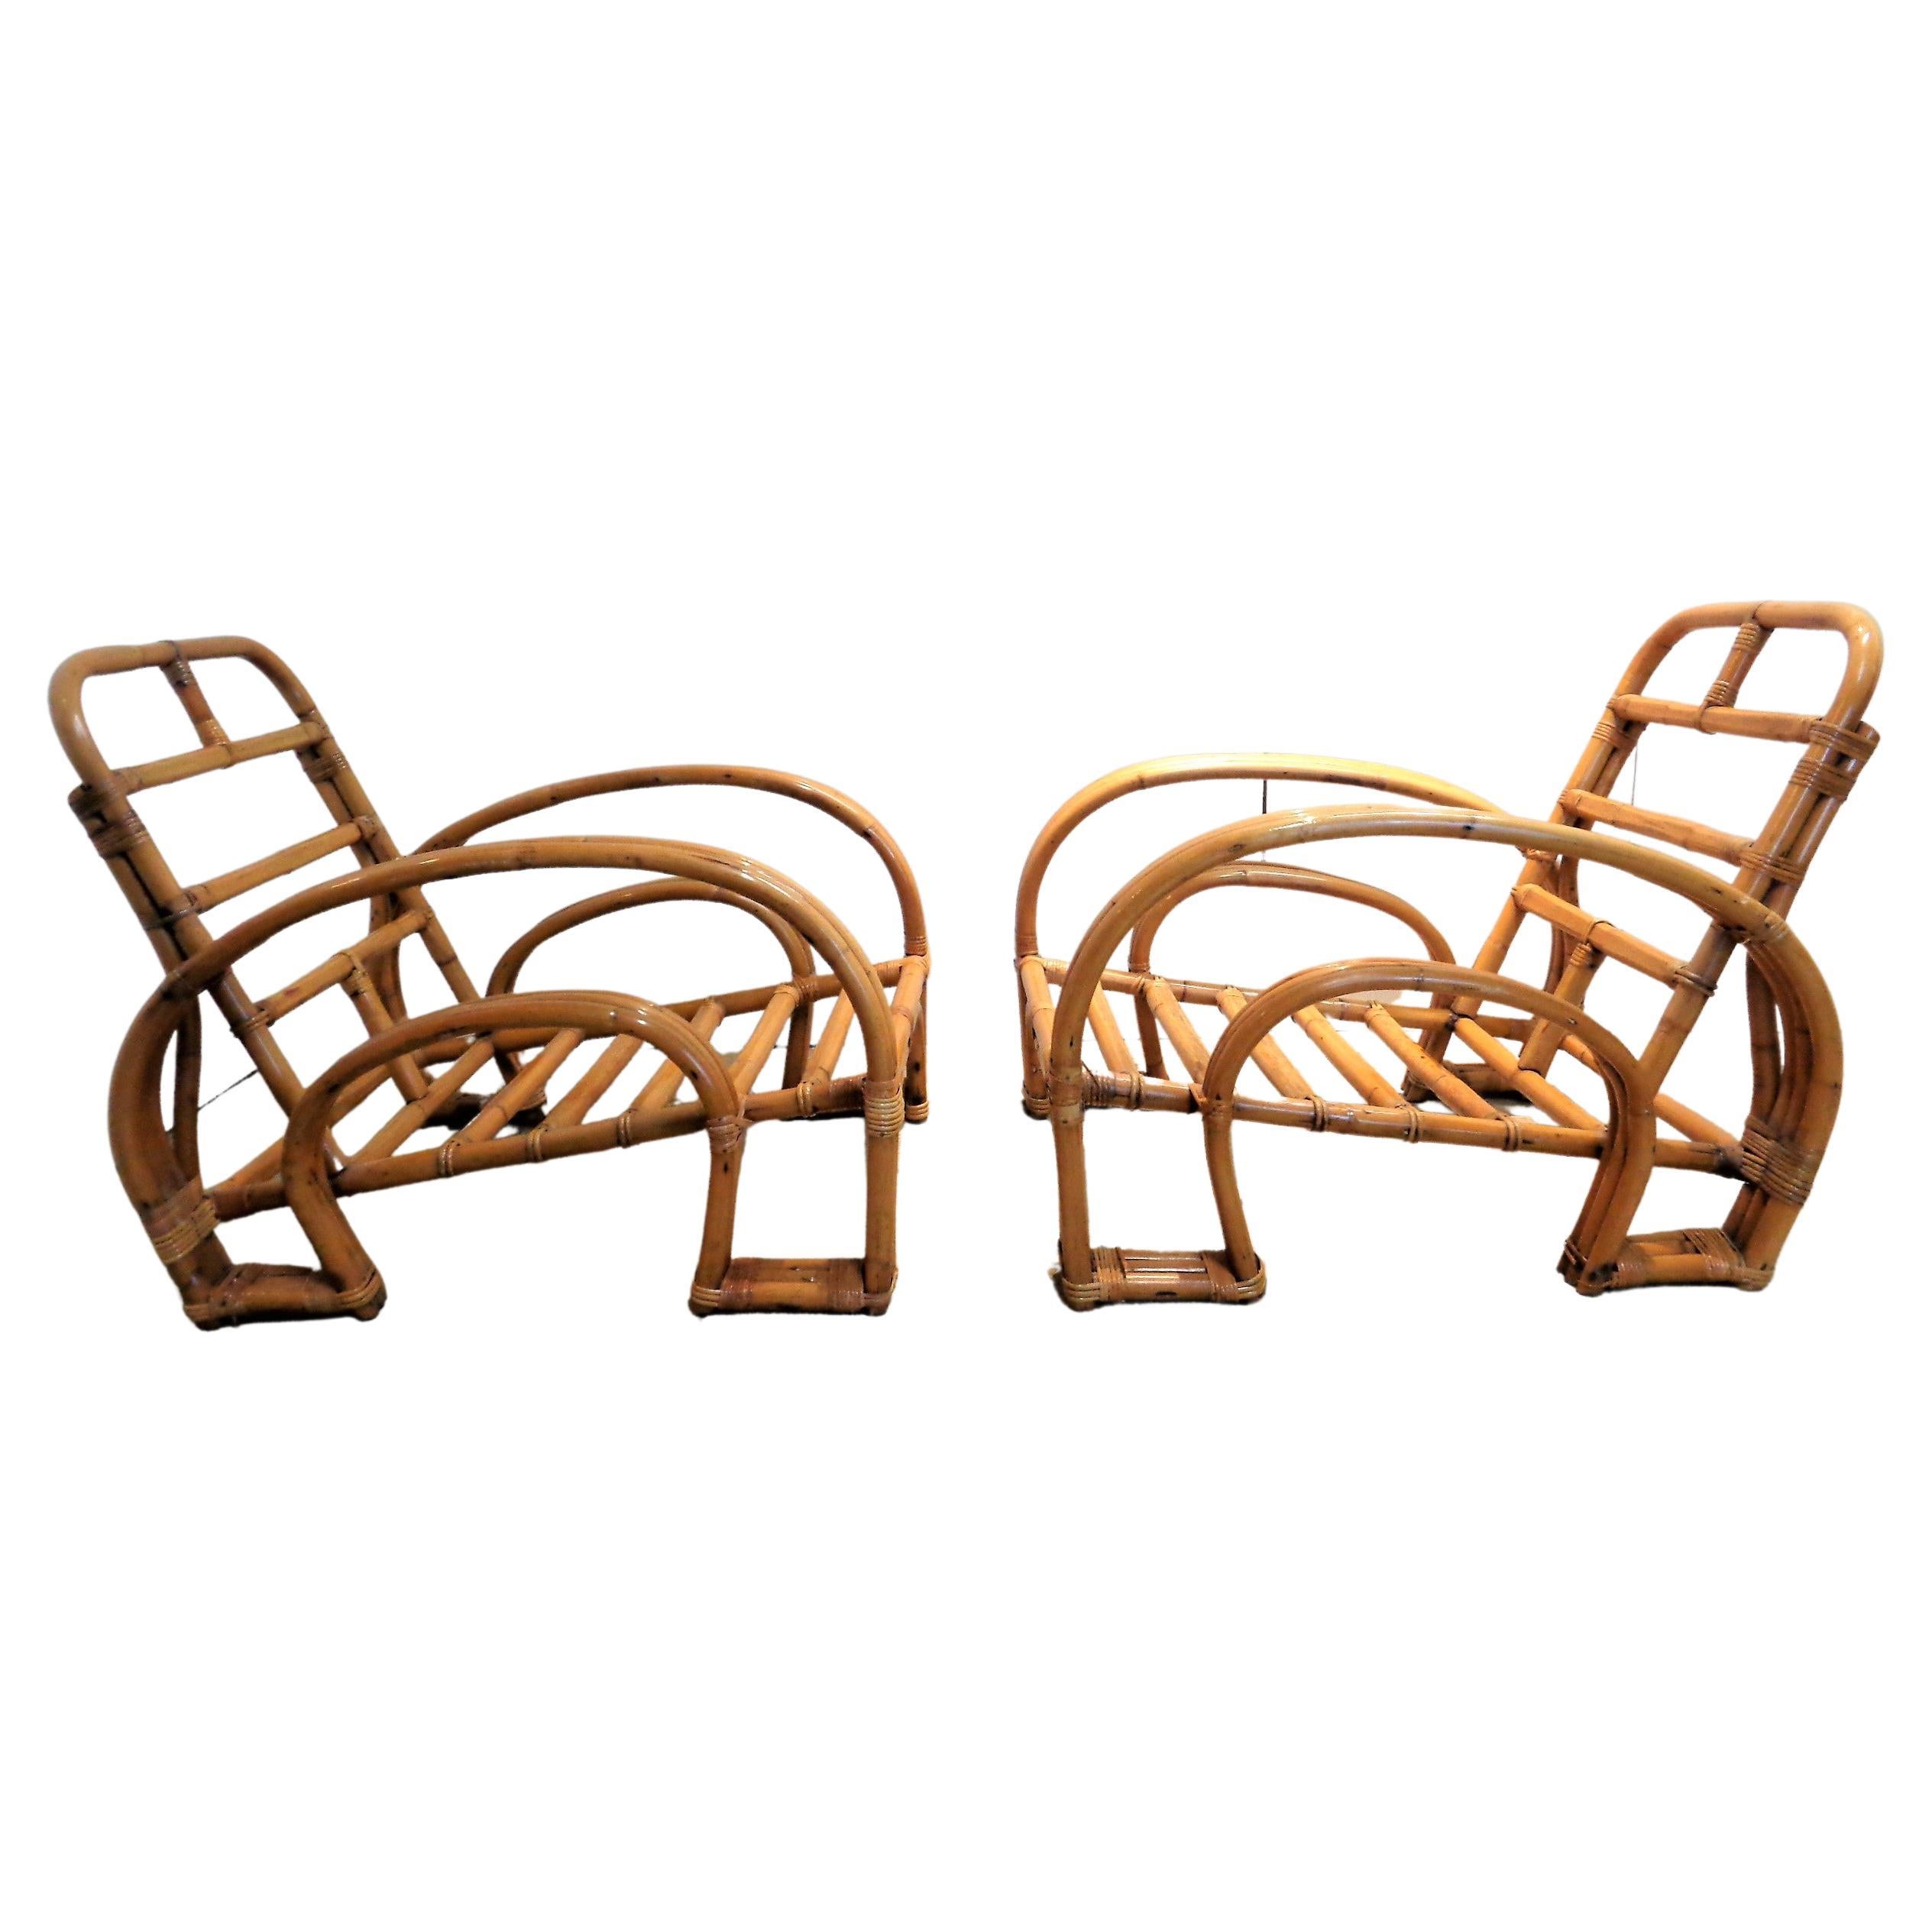 Exceptionnelle paire de chaises de salon Art Déco en rotin et canne à trois brins en double fer à cheval, dont la couleur de surface brillante d'origine a été magnifiquement vieillie. Attribué à Paul Frankl, vers 1940-1950. Les chaises mesurent 30